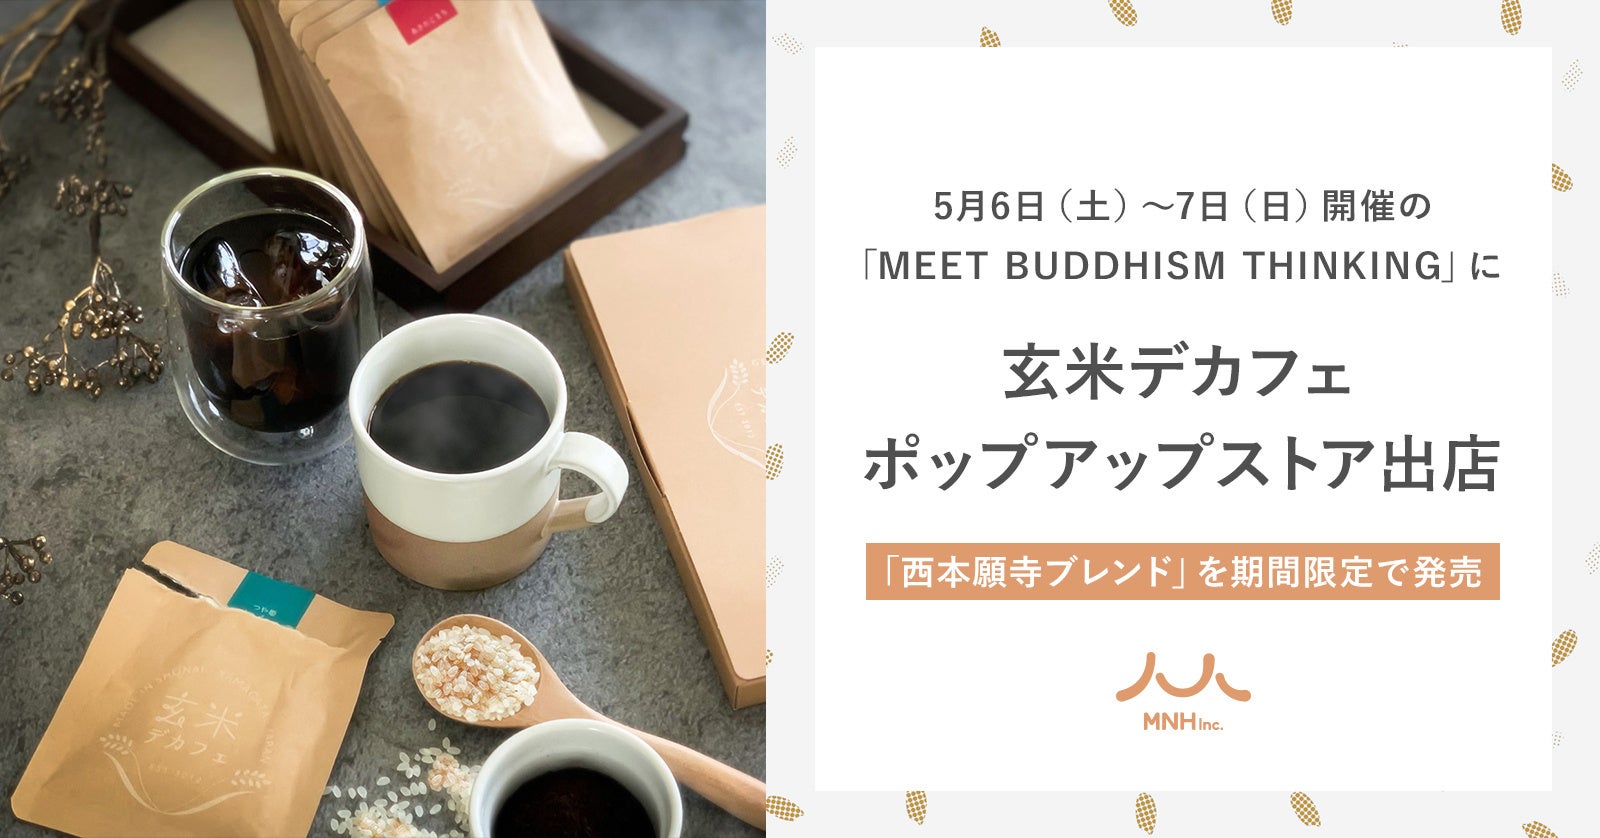 「西本願寺ブレンド」を期間限定で発売！5月6日（土）〜7日（日）開催の「MEET BUDDHISM THINKING」に玄米デカフェのポップアップストアを出店